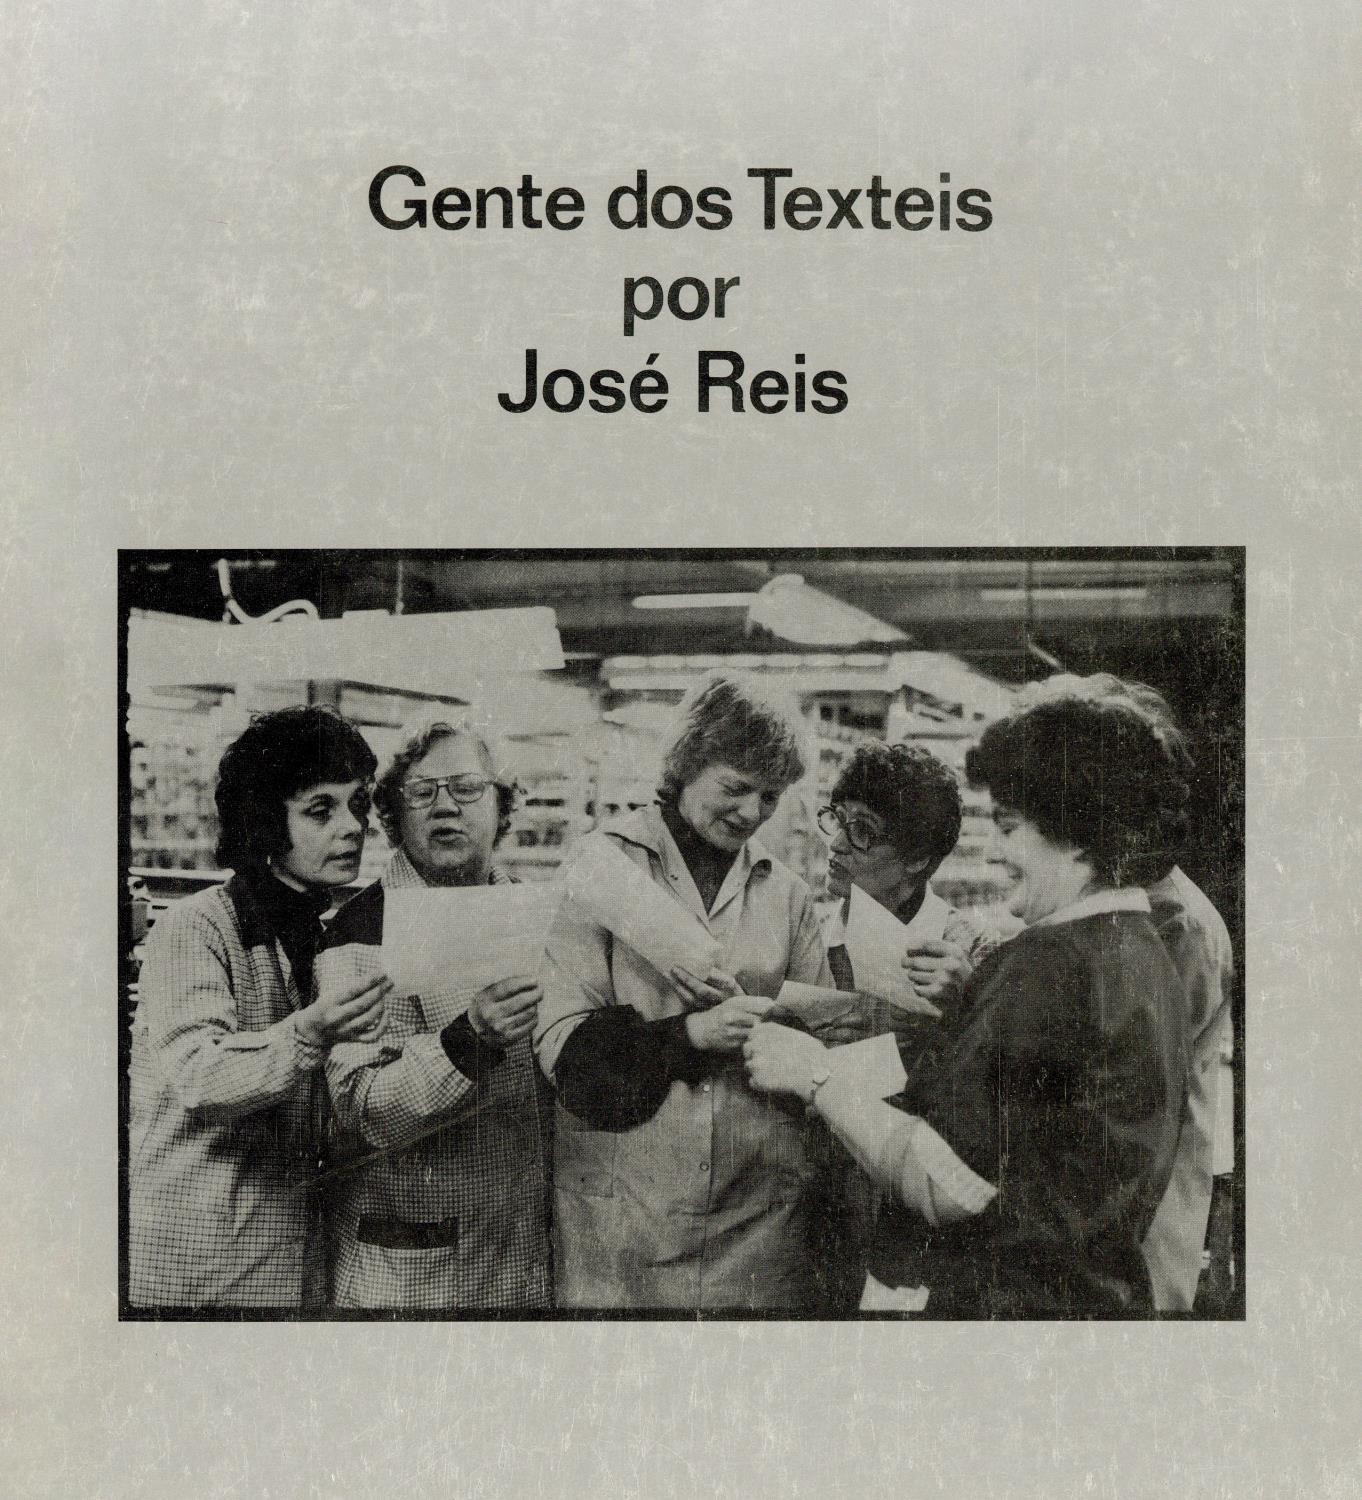 Gentes dos Têxteis por José Reis